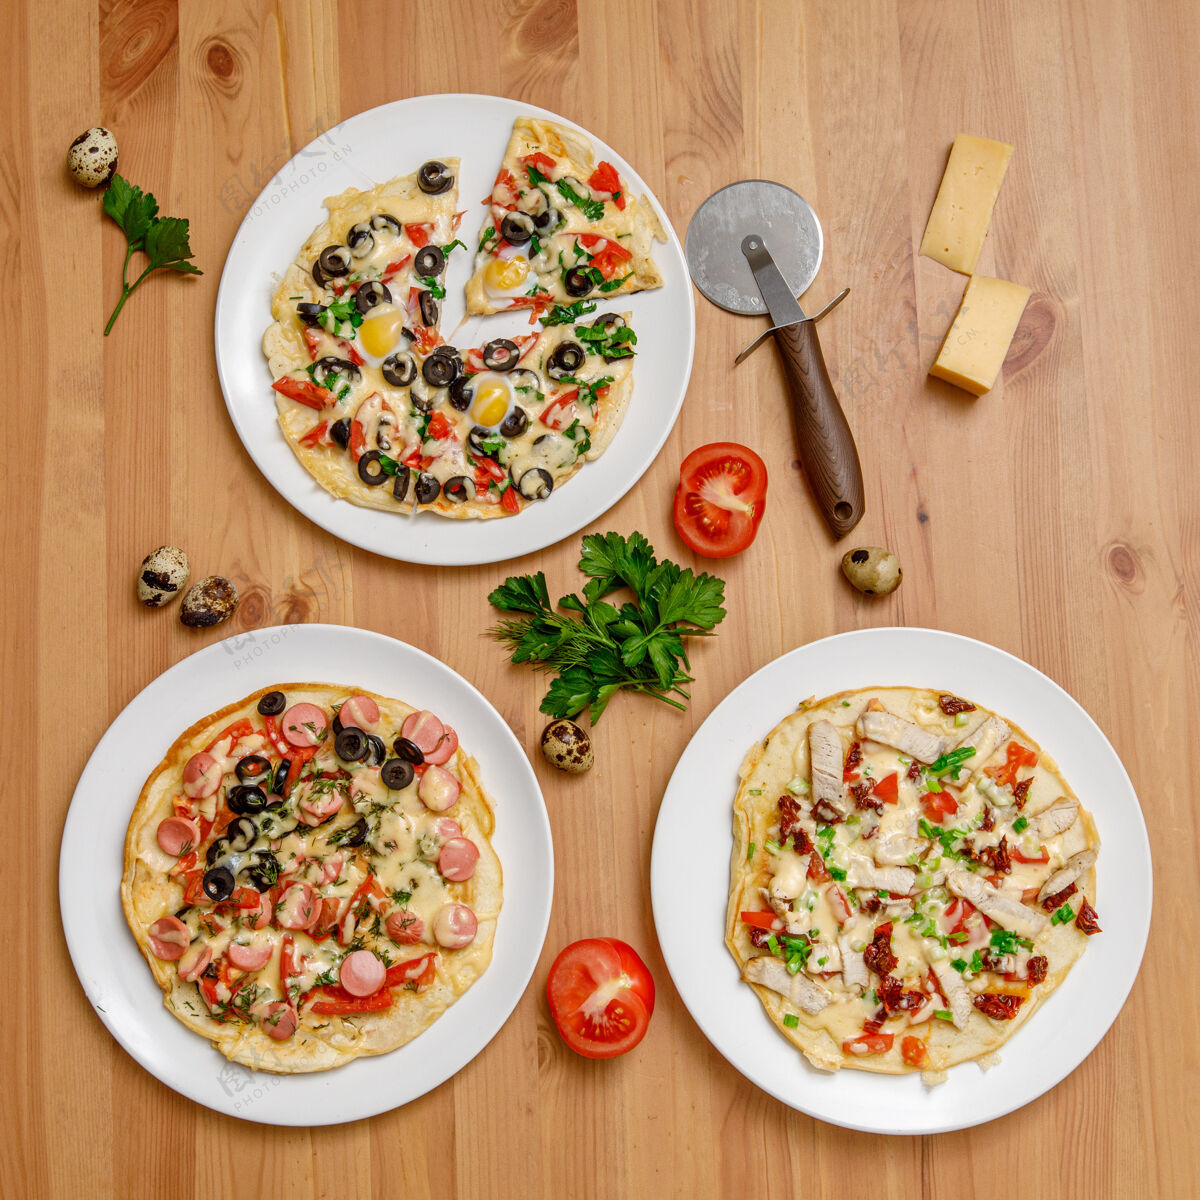 西红柿木桌上放着西红柿和奶酪的自制披萨食物烹饪热的